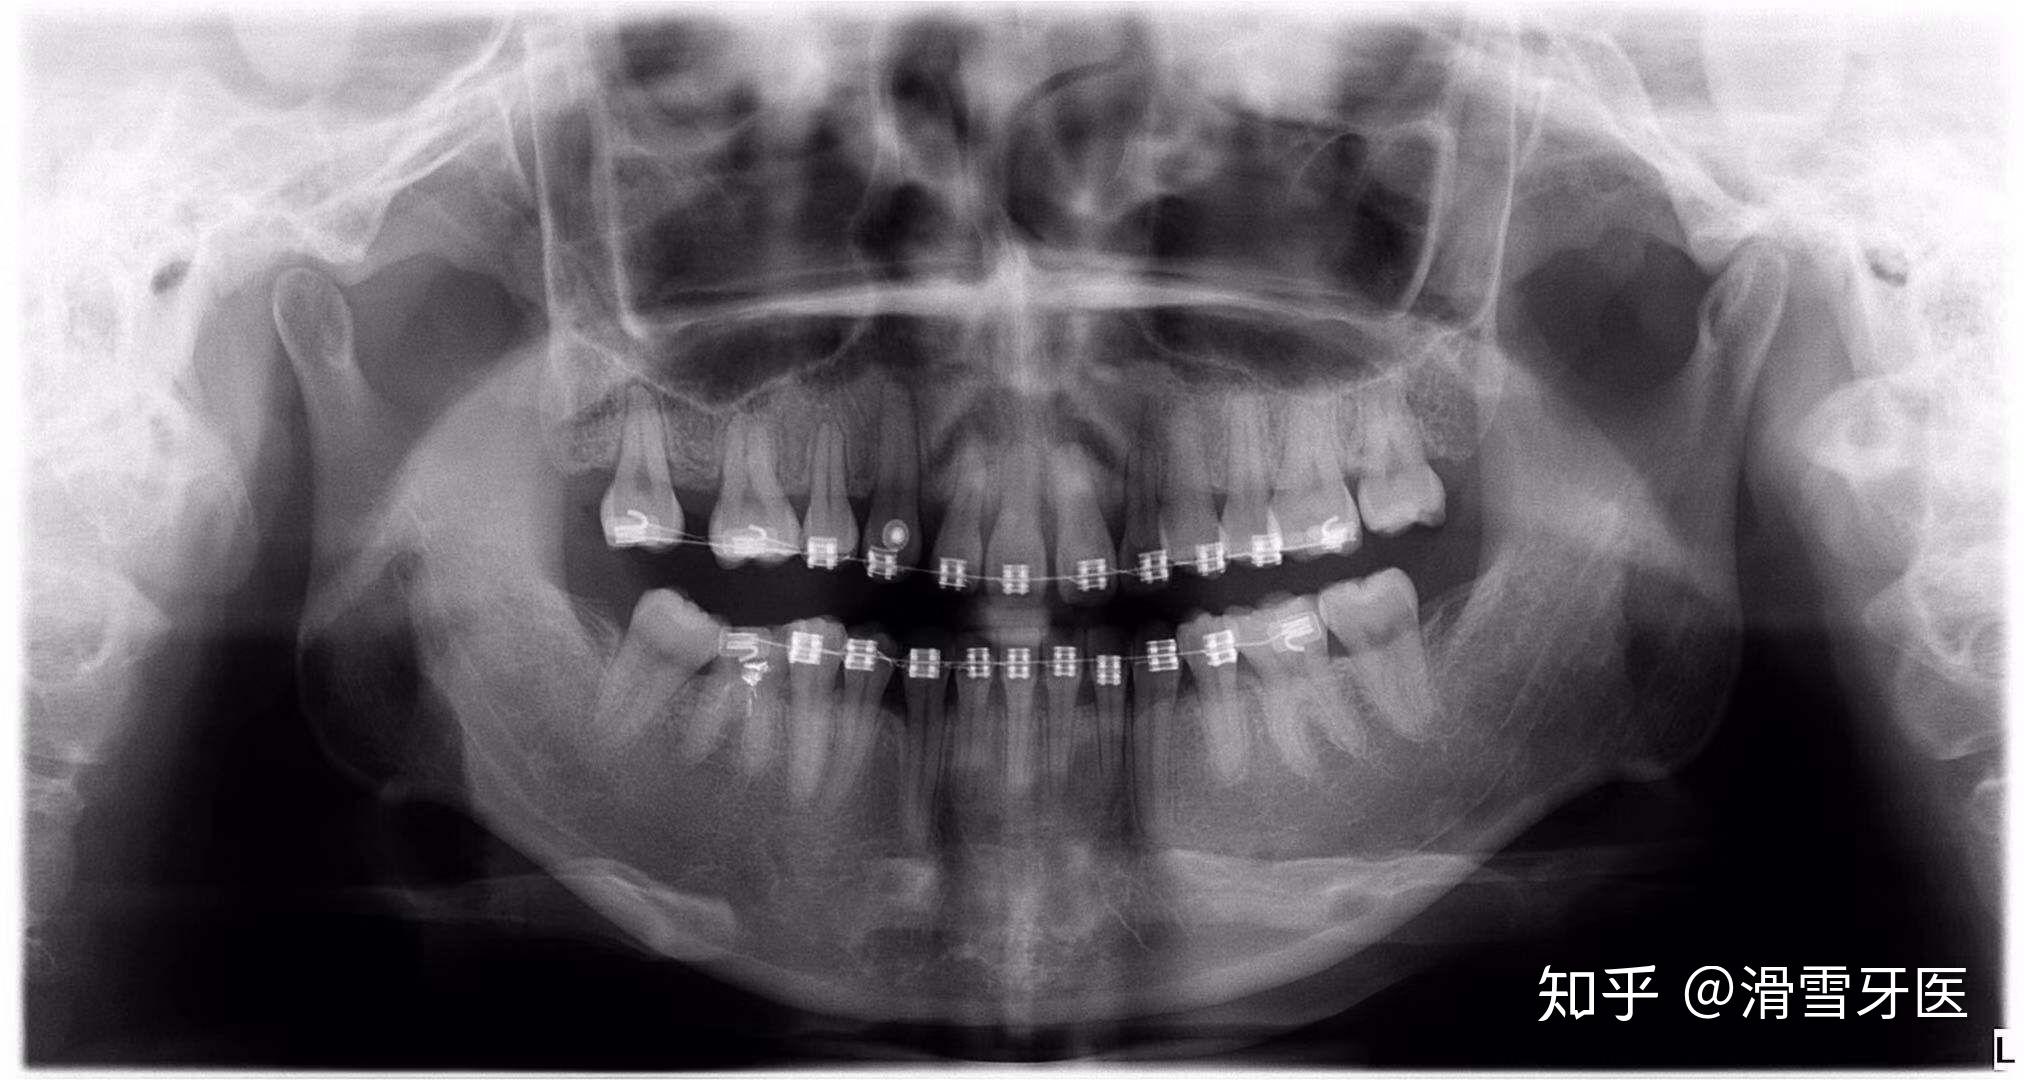 正畸根尖区牙根外吸收的风险因素及其临床处理建议的专家共识